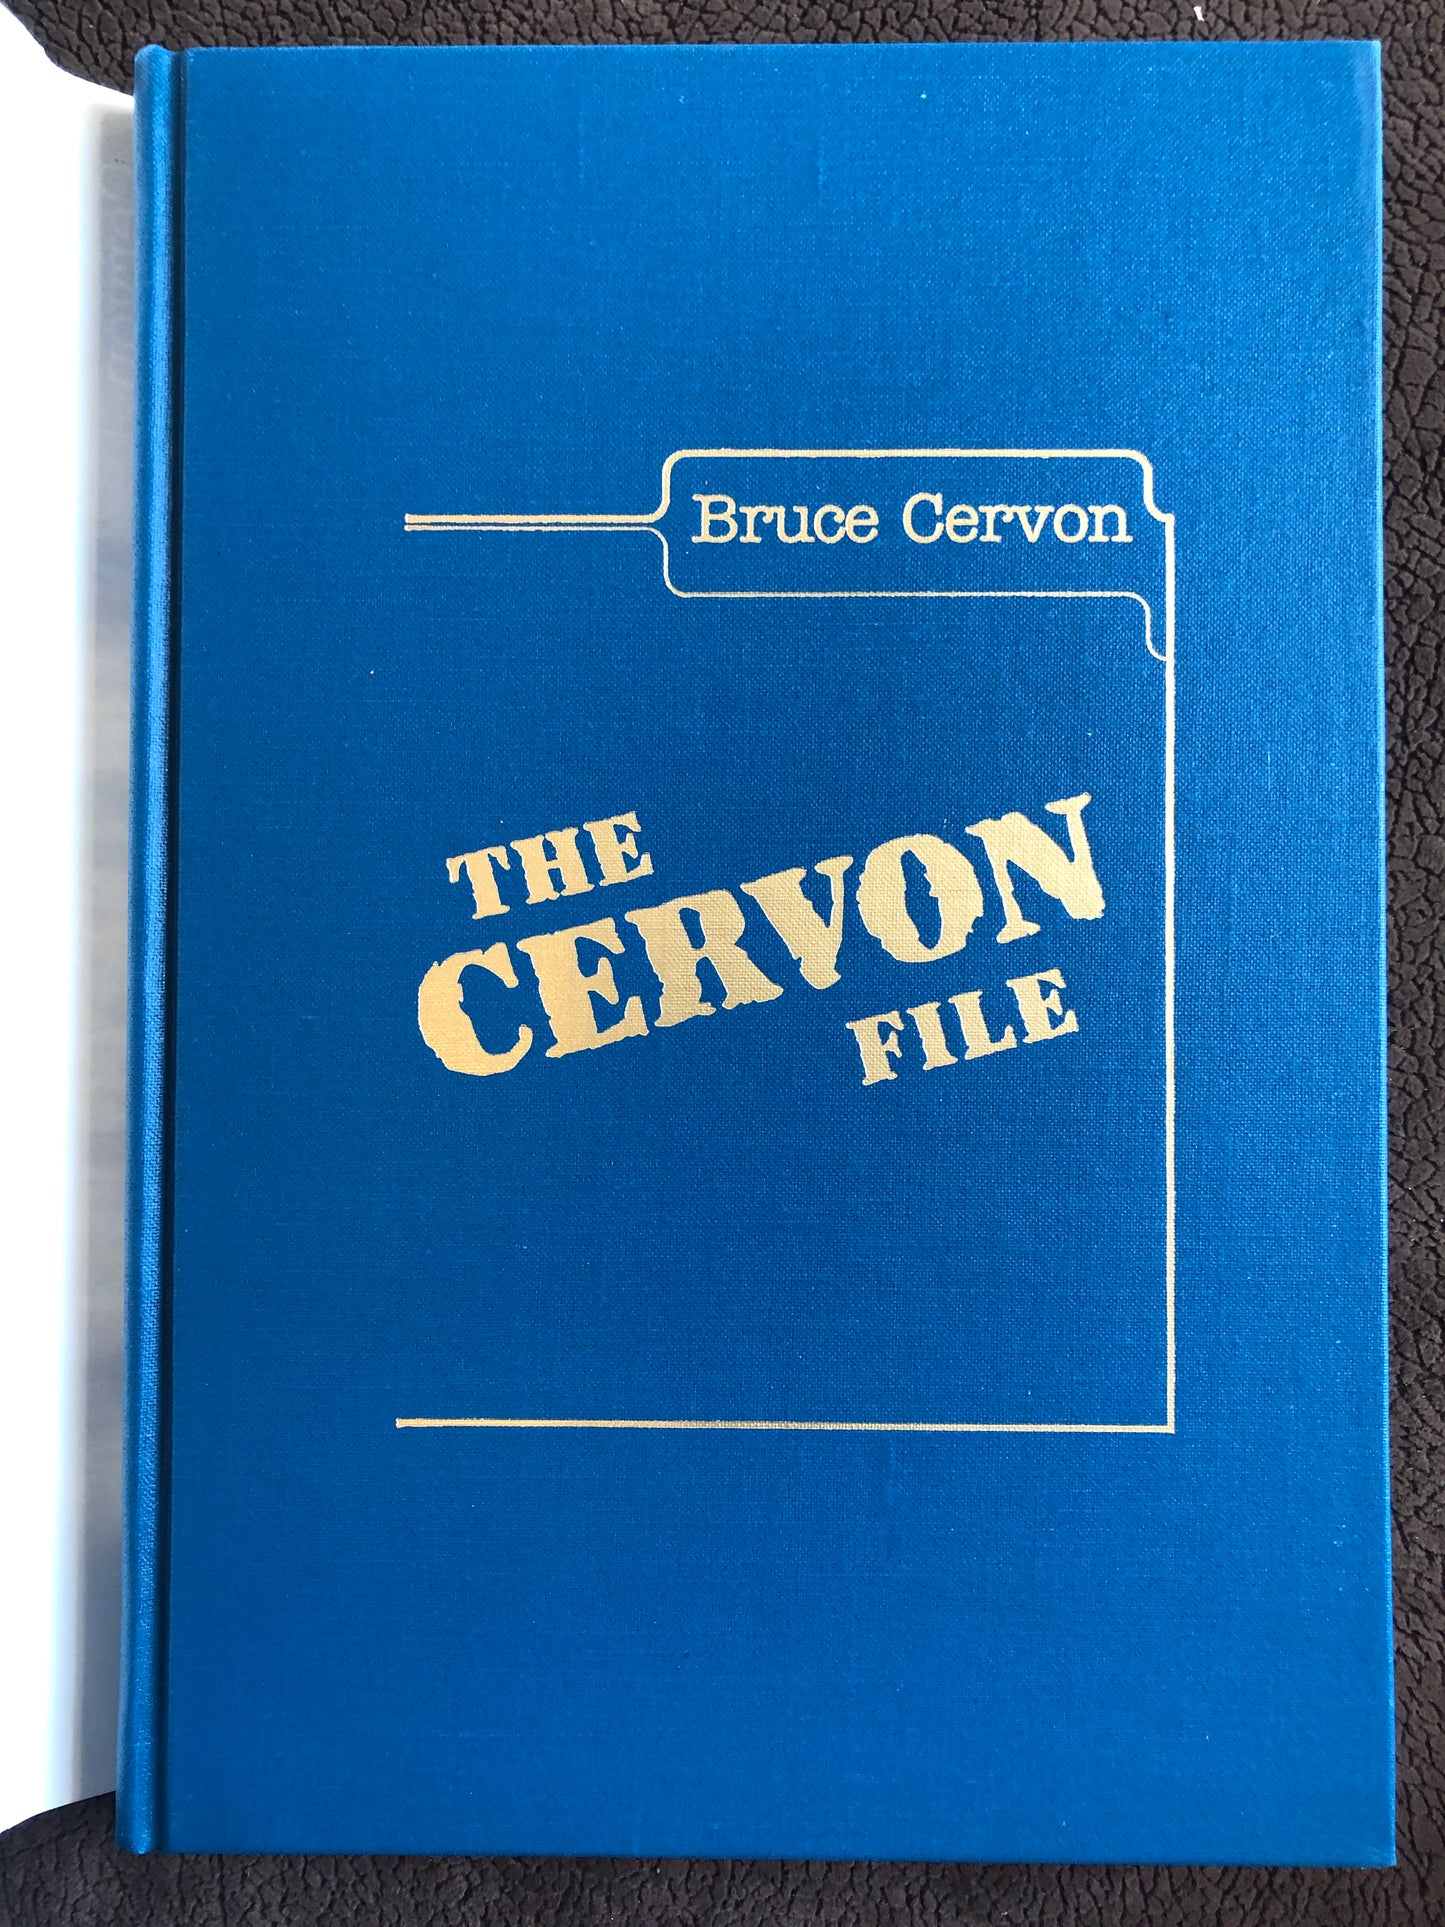 The Cervon File - Bruce Cervon